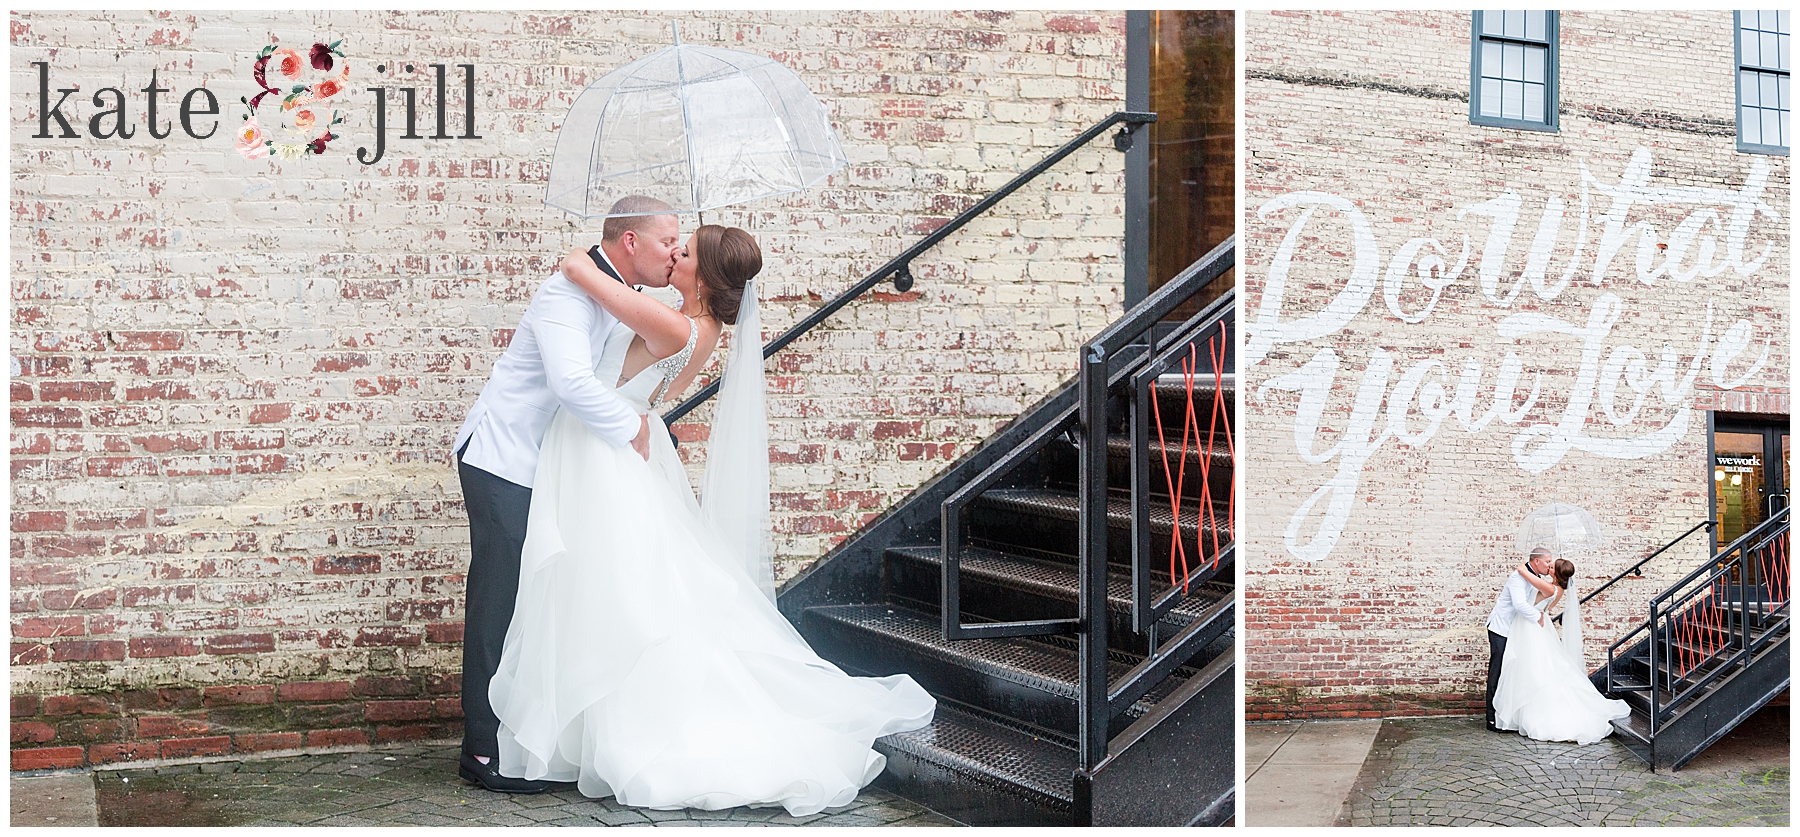 bride and groom wedding rain photos umbrella 